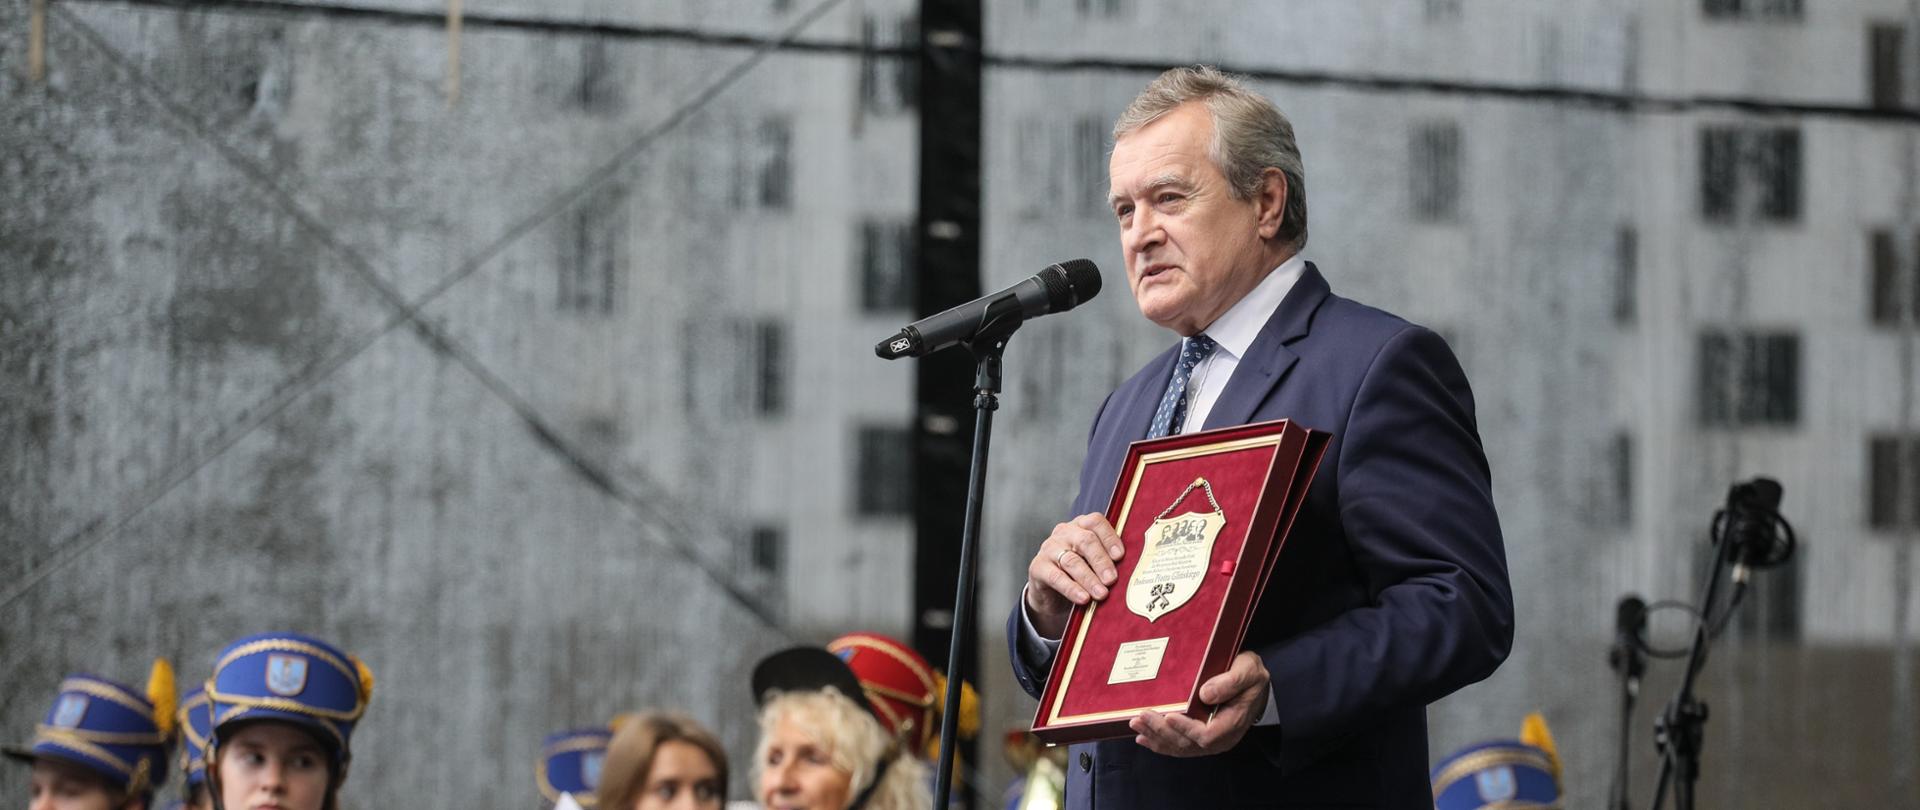 Wicepremier Piotr Gliński otrzymał symboliczne klucze do miasta Sulejówek , fot. Paweł Supernak/PAP